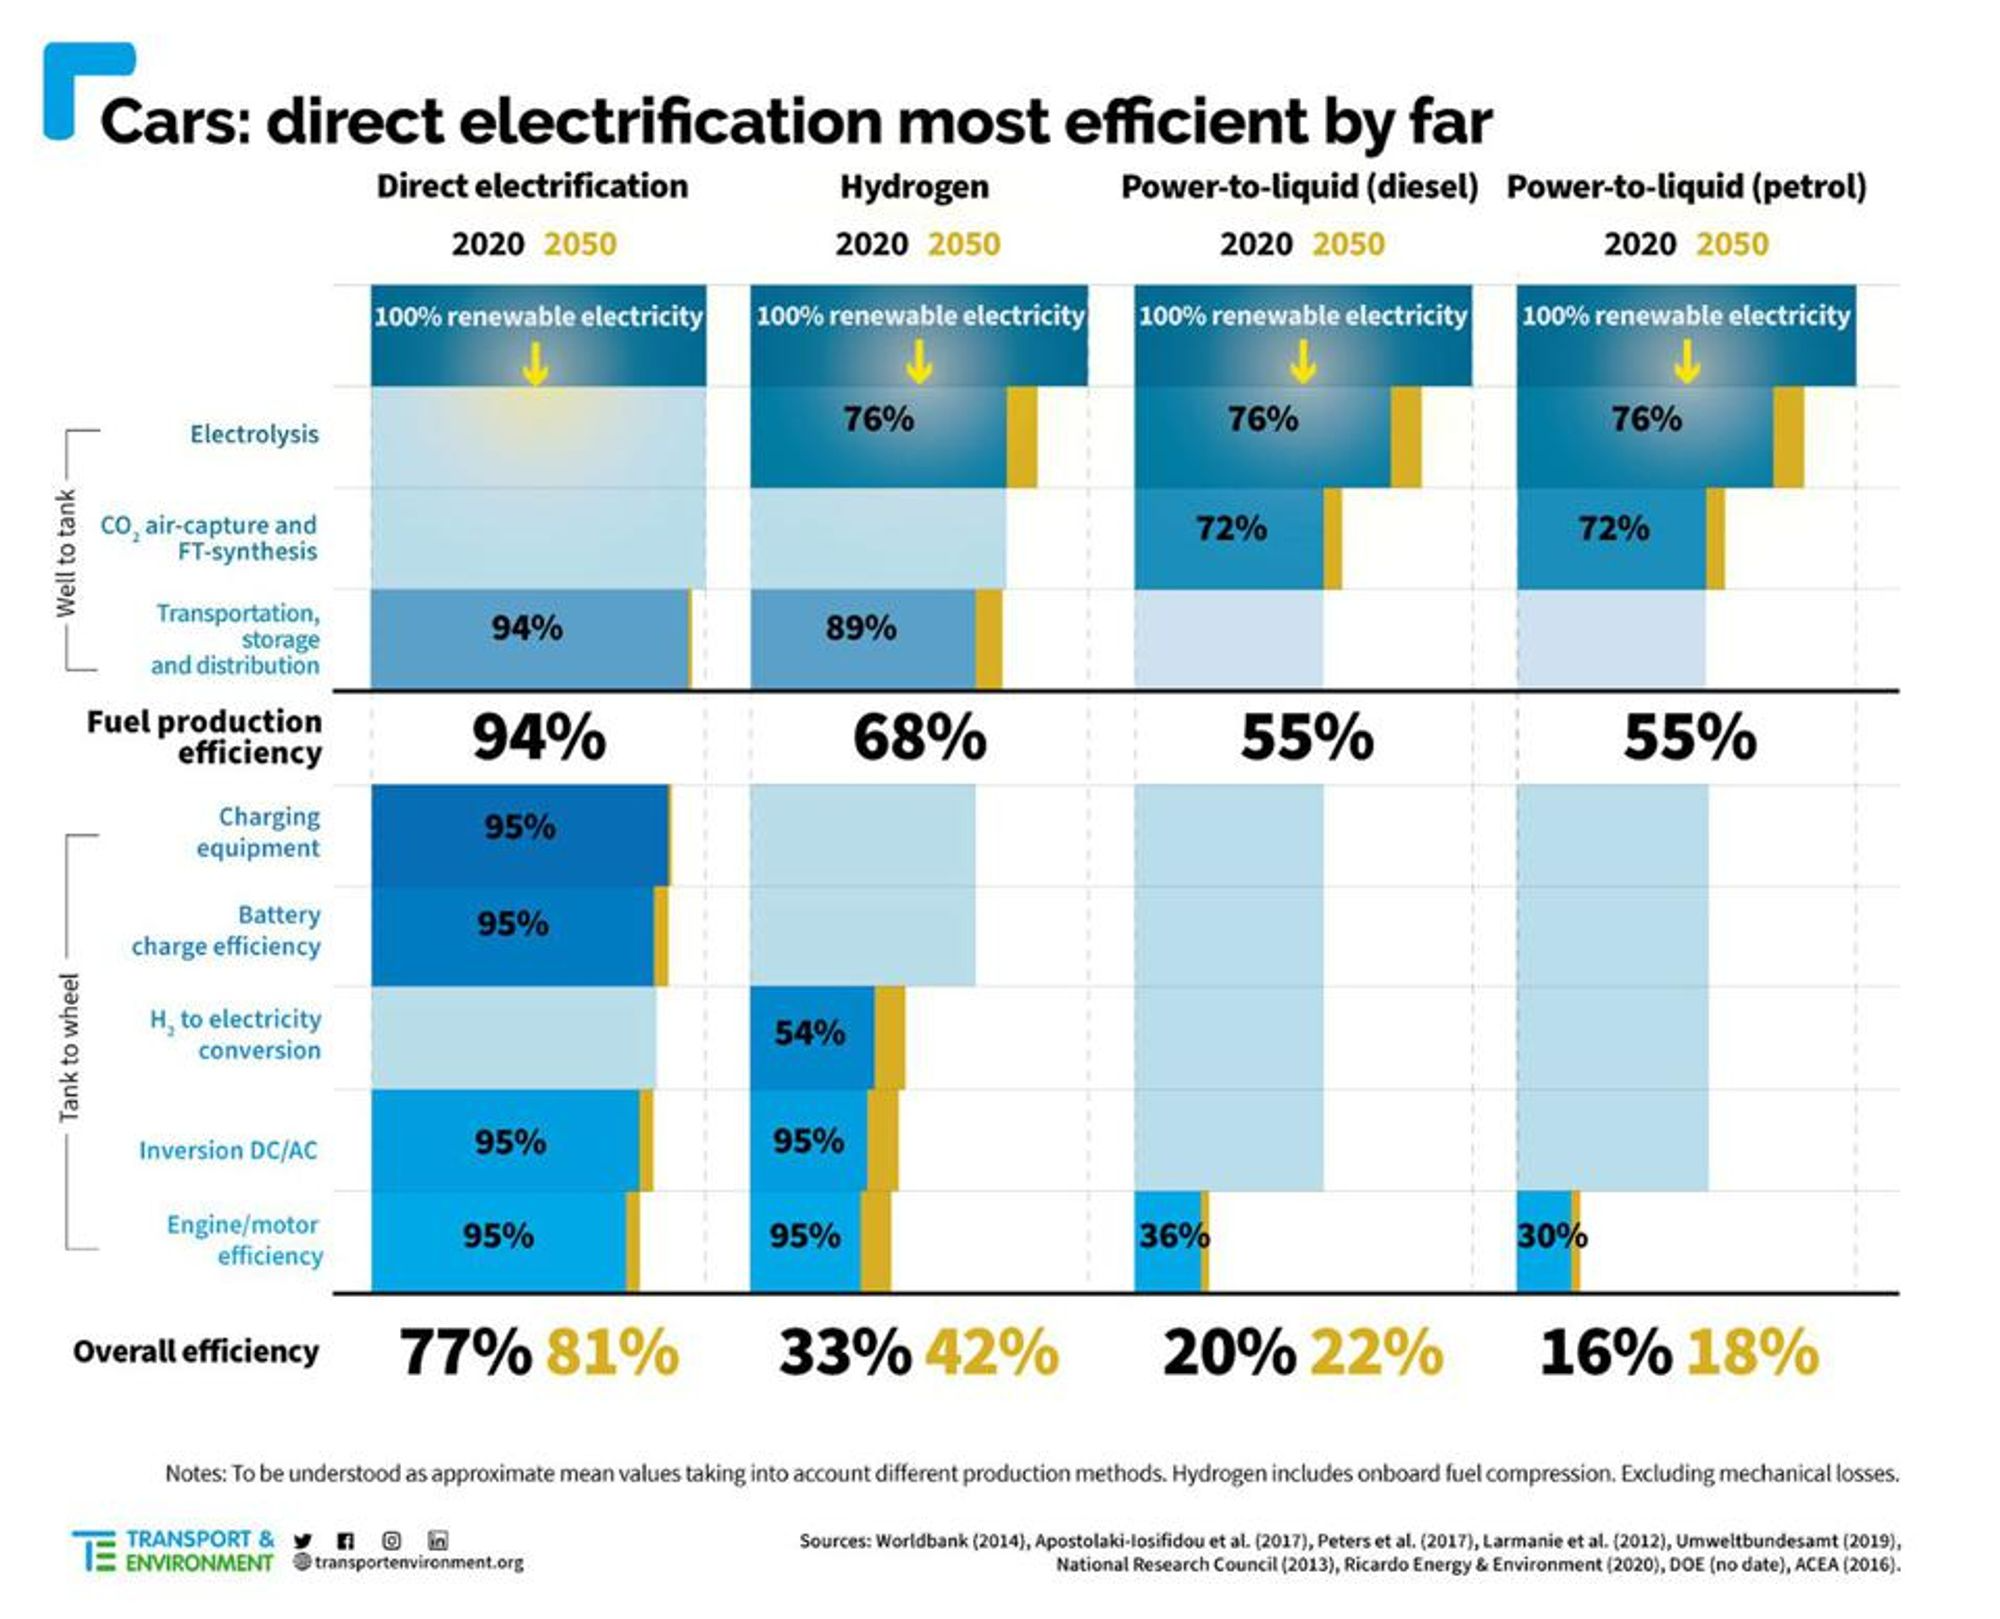 Dieses Schaubild verdeutlicht die Unterschiede in den Effizienzen. E-Fuels (hier genannt “power-to-liquid”) schneiden mit Abstand am schlechtesten ab, Batterieautos (”direct electrification”) am besten. [Quelle](https://www.transportenvironment.org/wp-content/uploads/2020/12/2020_12_Briefing_feasibility_study_renewables_decarbonisation.pdf)